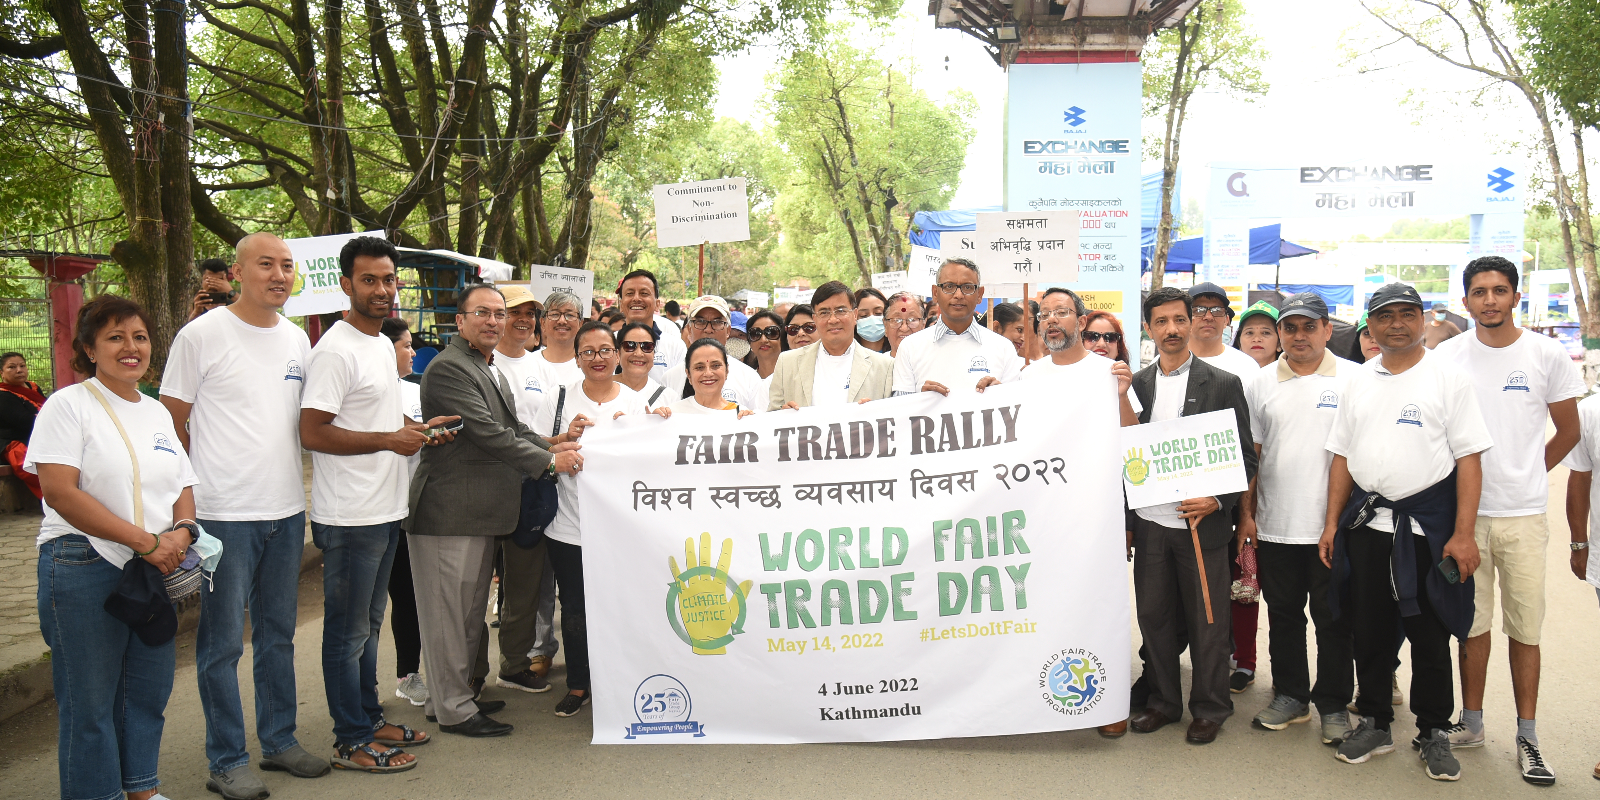 Fair Trade Rally to celebrate the World Fair Trade Day 2022